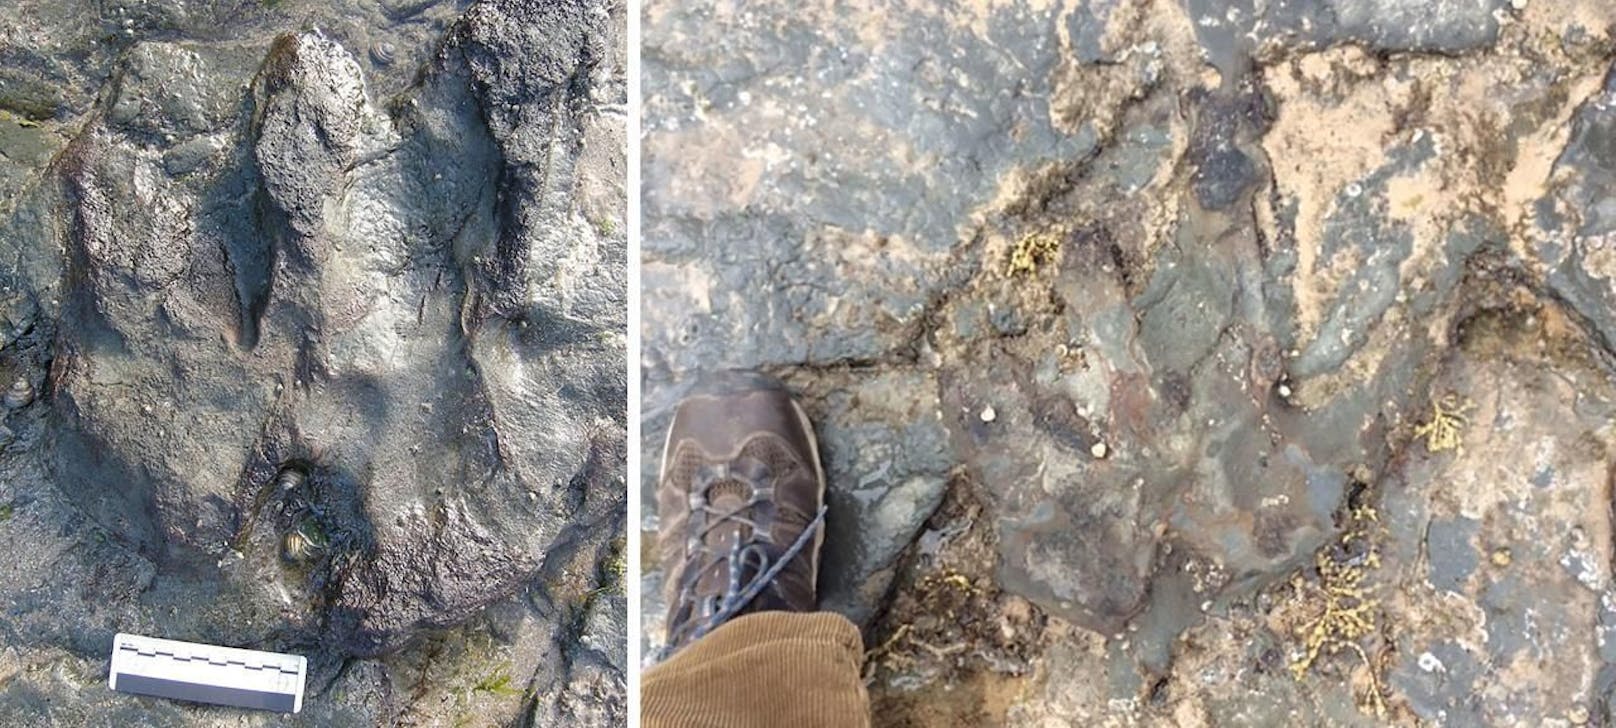 Vandalen haben zugeschlagen: Der zerstörte Dinosaurier-Fußabdruck (rechts).